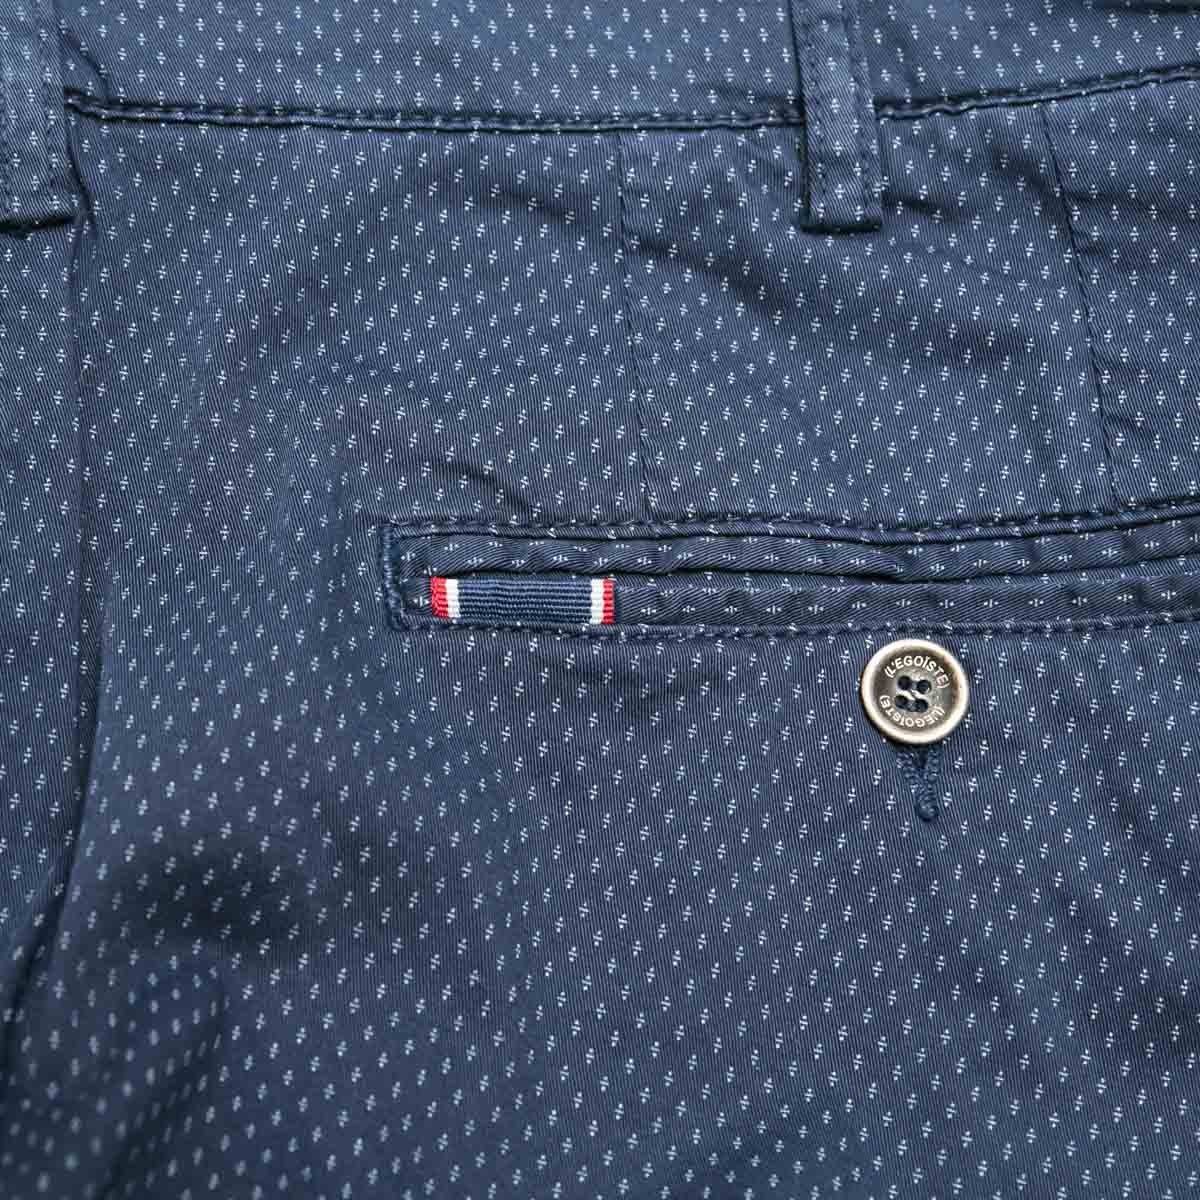 pantalon-chino-marine-a-motifs-pour-homme-detail-galon